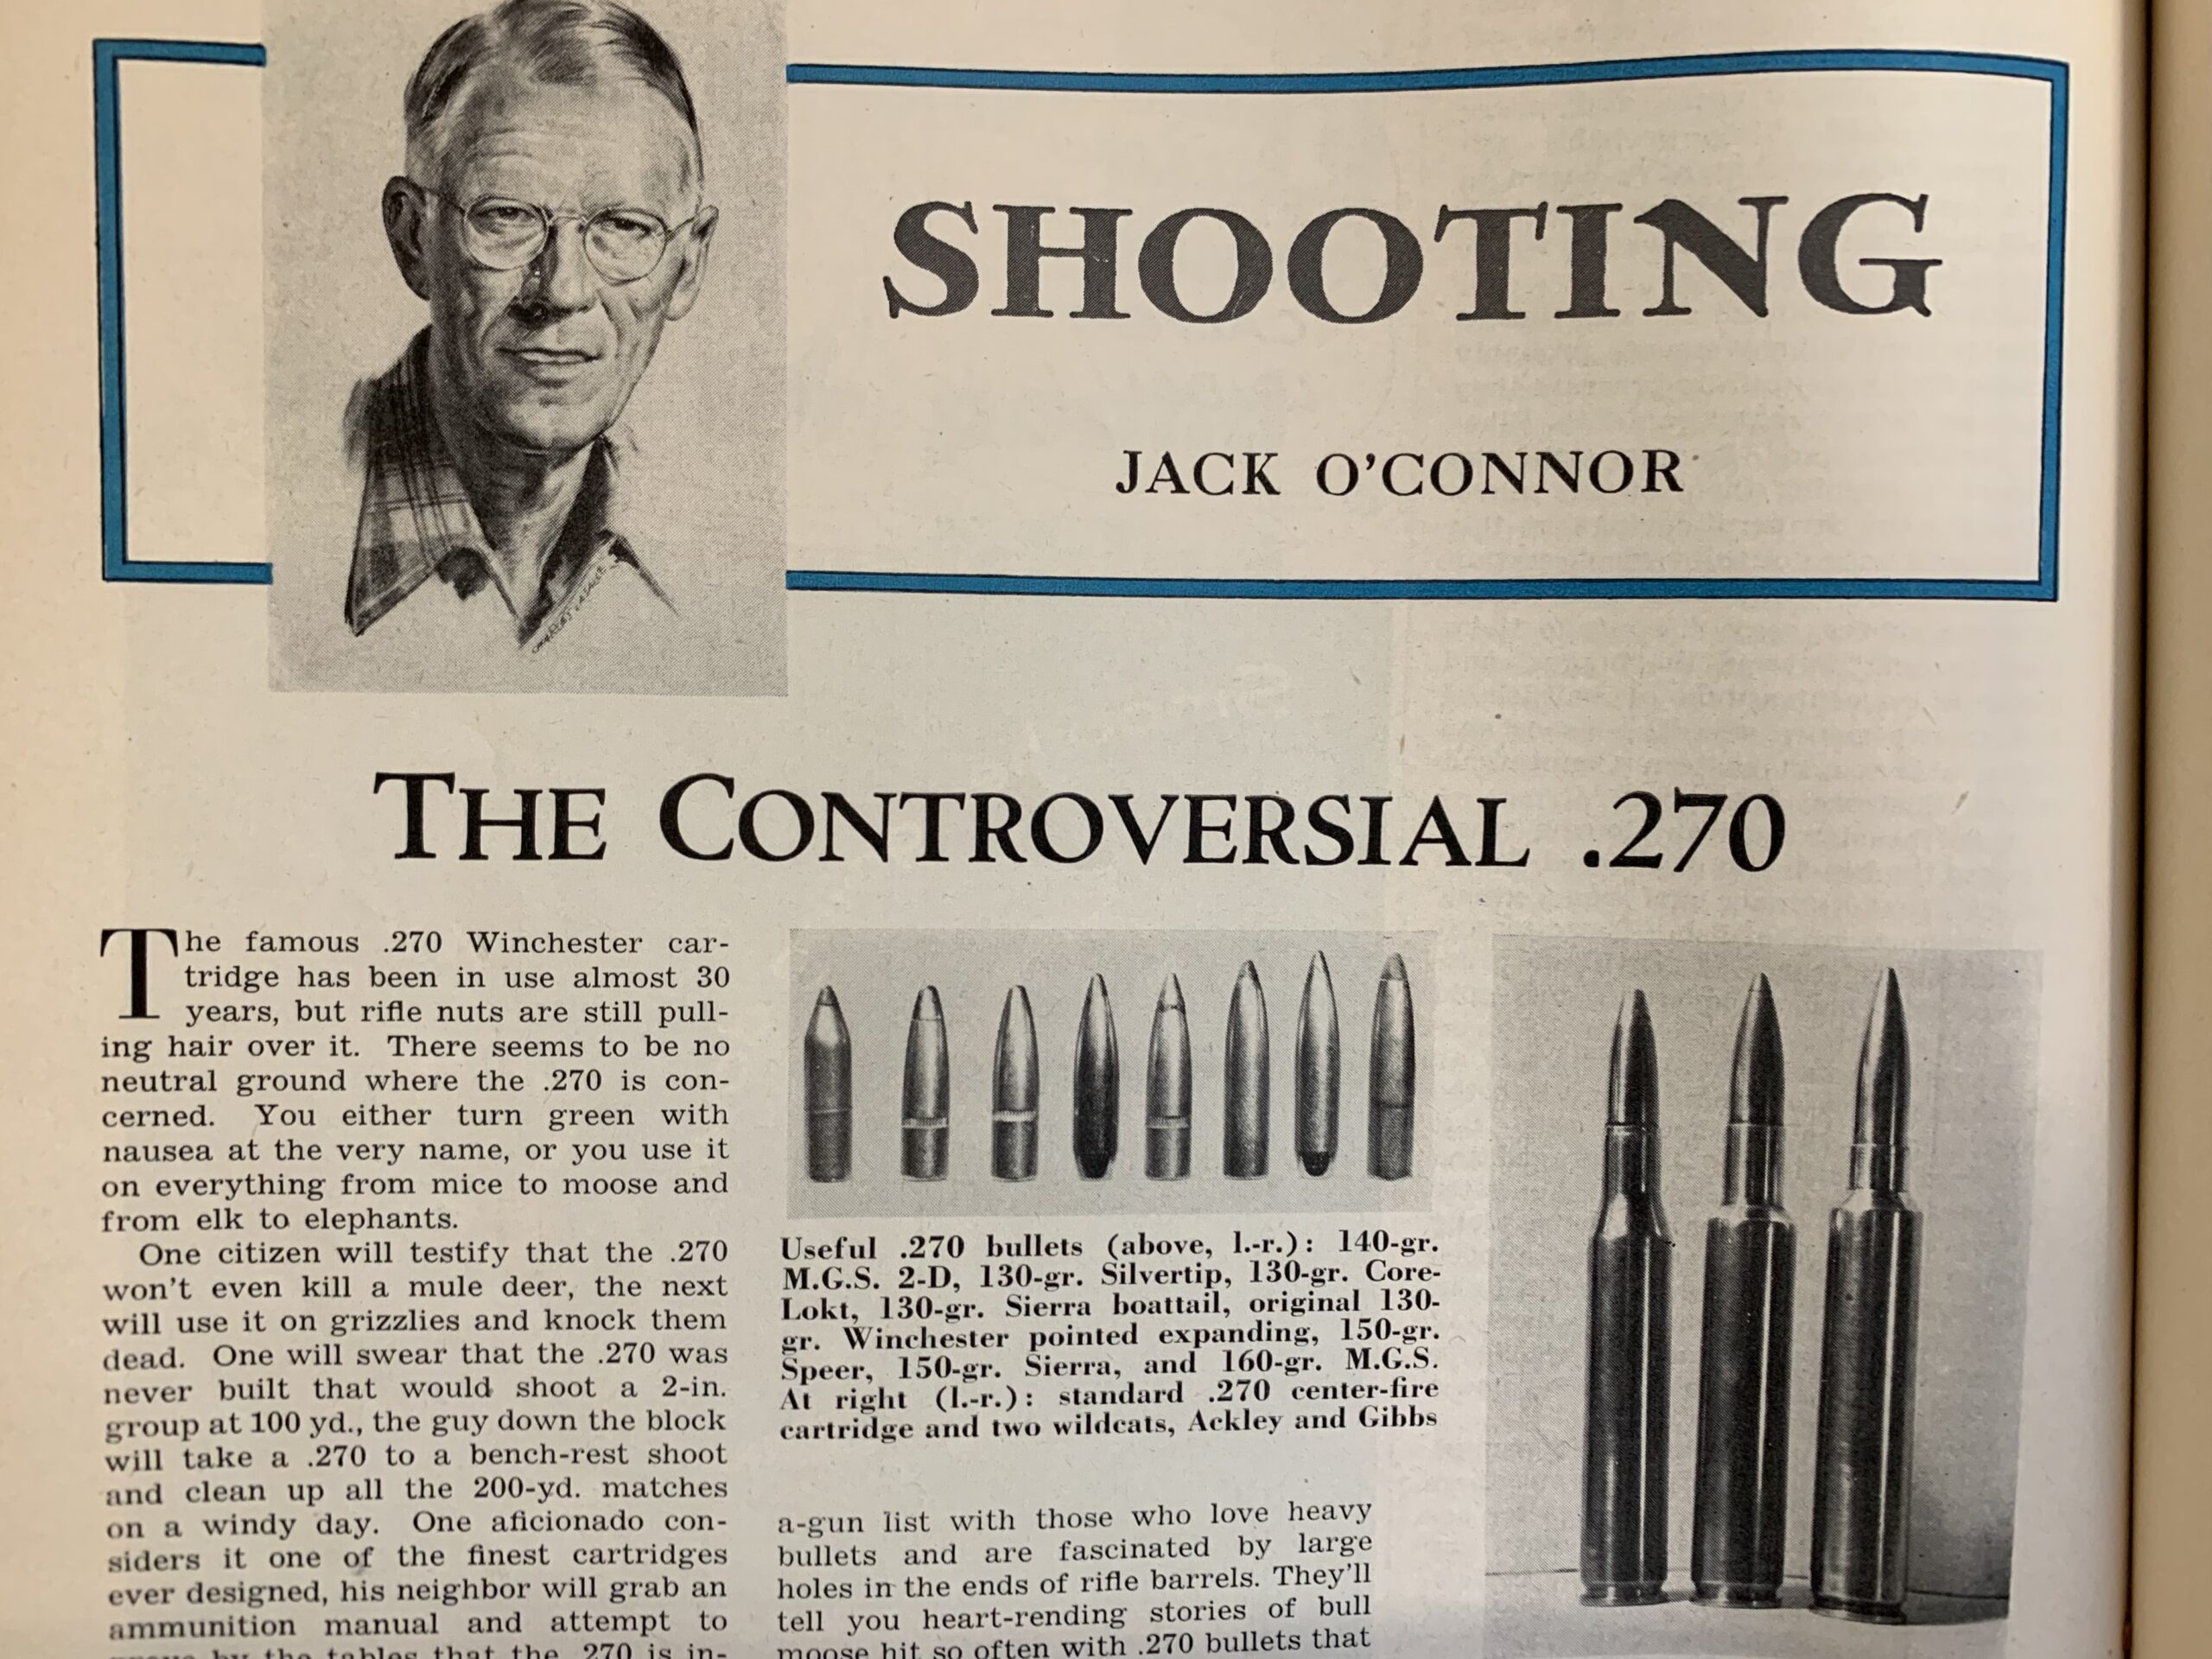 O'Connor shooting column